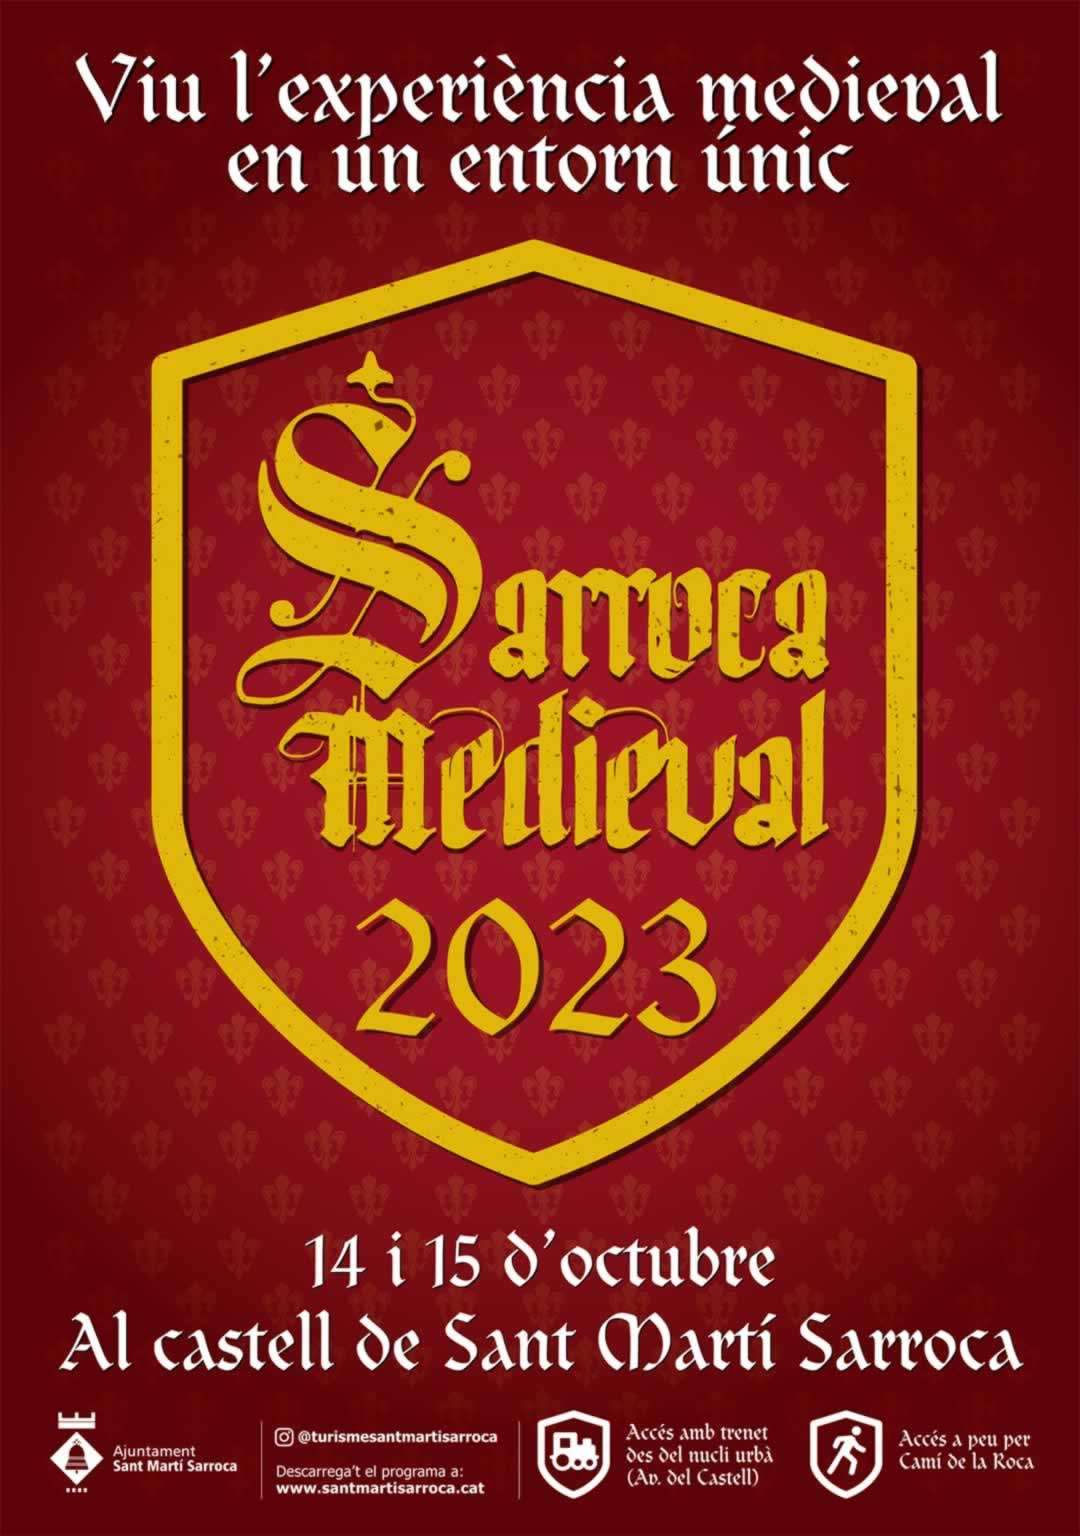 mercadosmedievales.net - Mercado Medieval de Sant Martí Sarroca (Barcelona) 2023